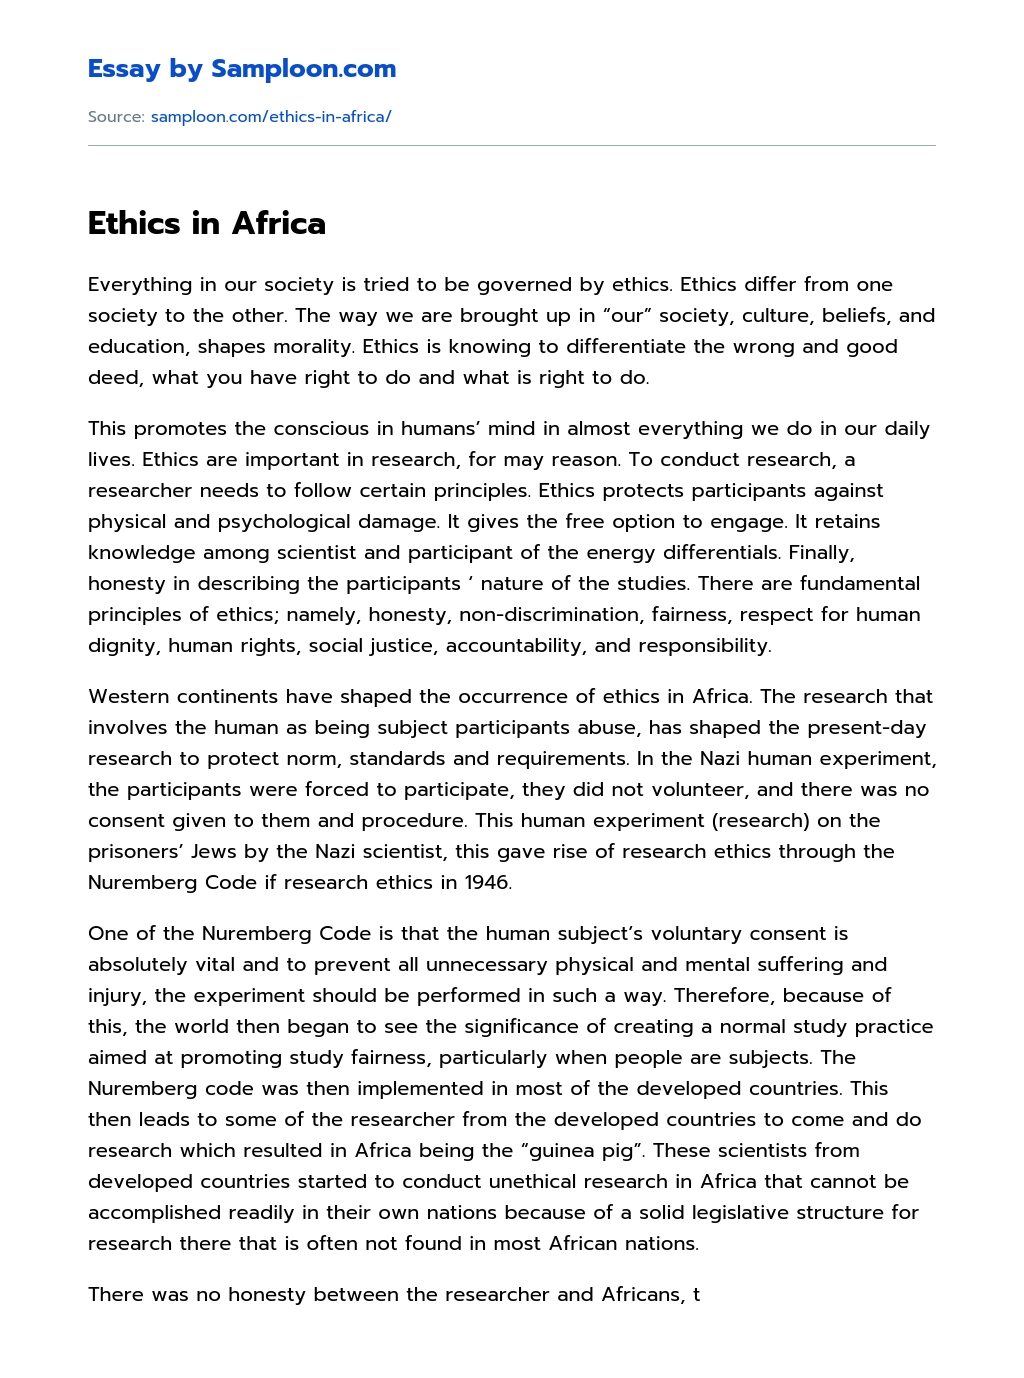 Ethics in Africa essay